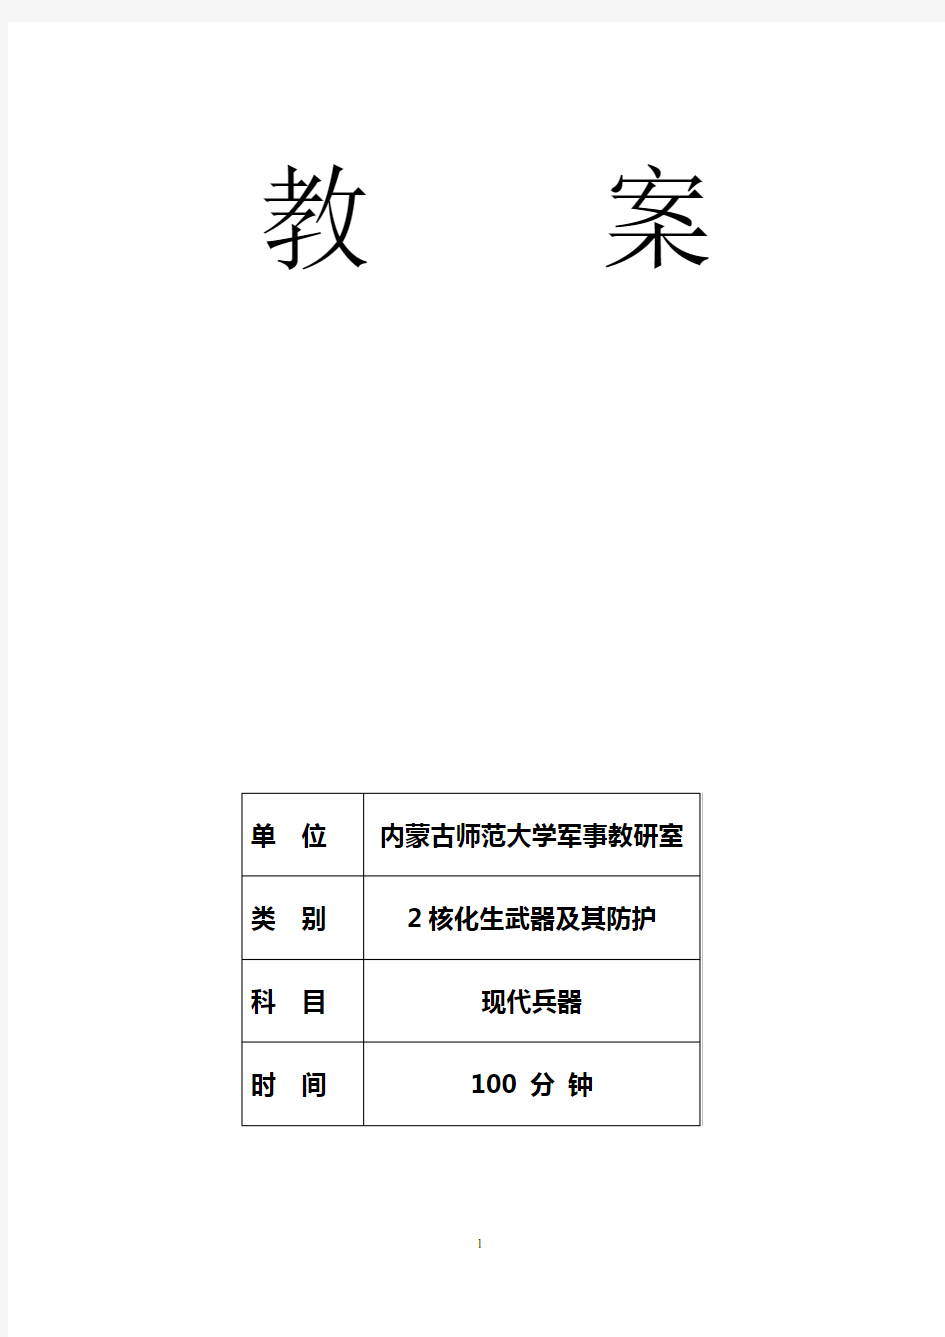 核化生教案(刘2011年3月28日整理)